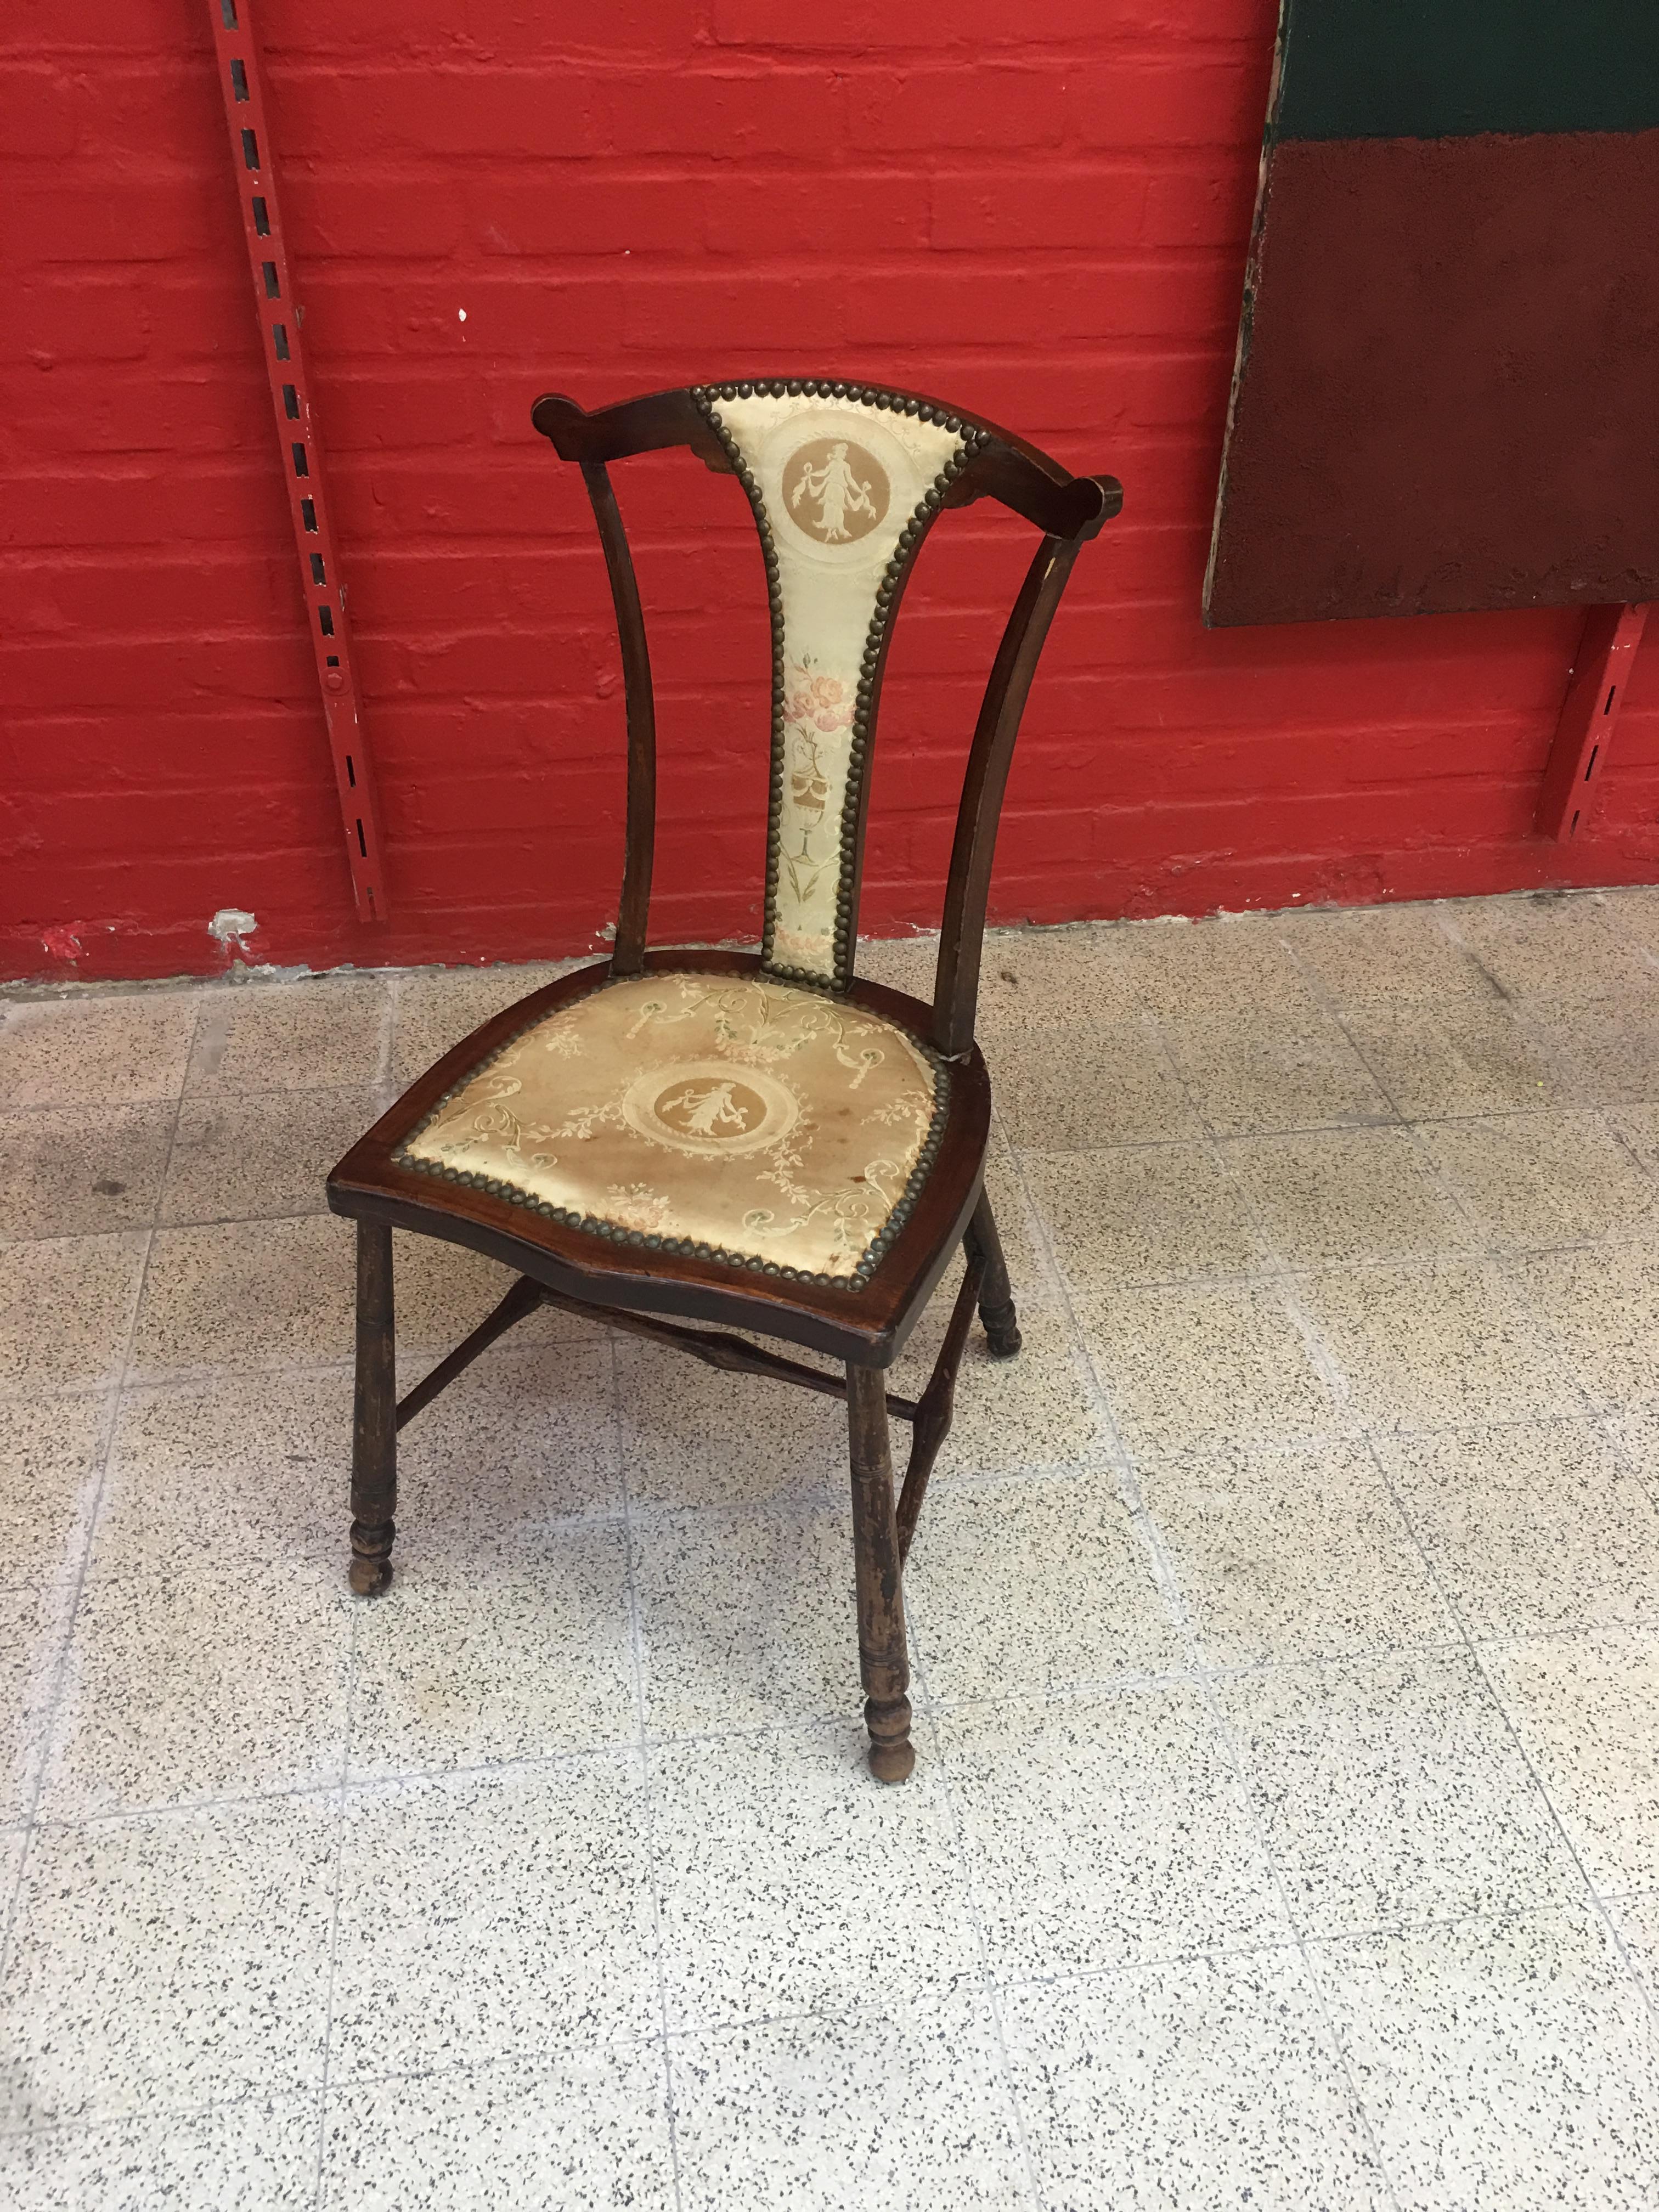 Charmante petite chaise anglaise, vers 1900
magnifique tissu d'origine au filet.